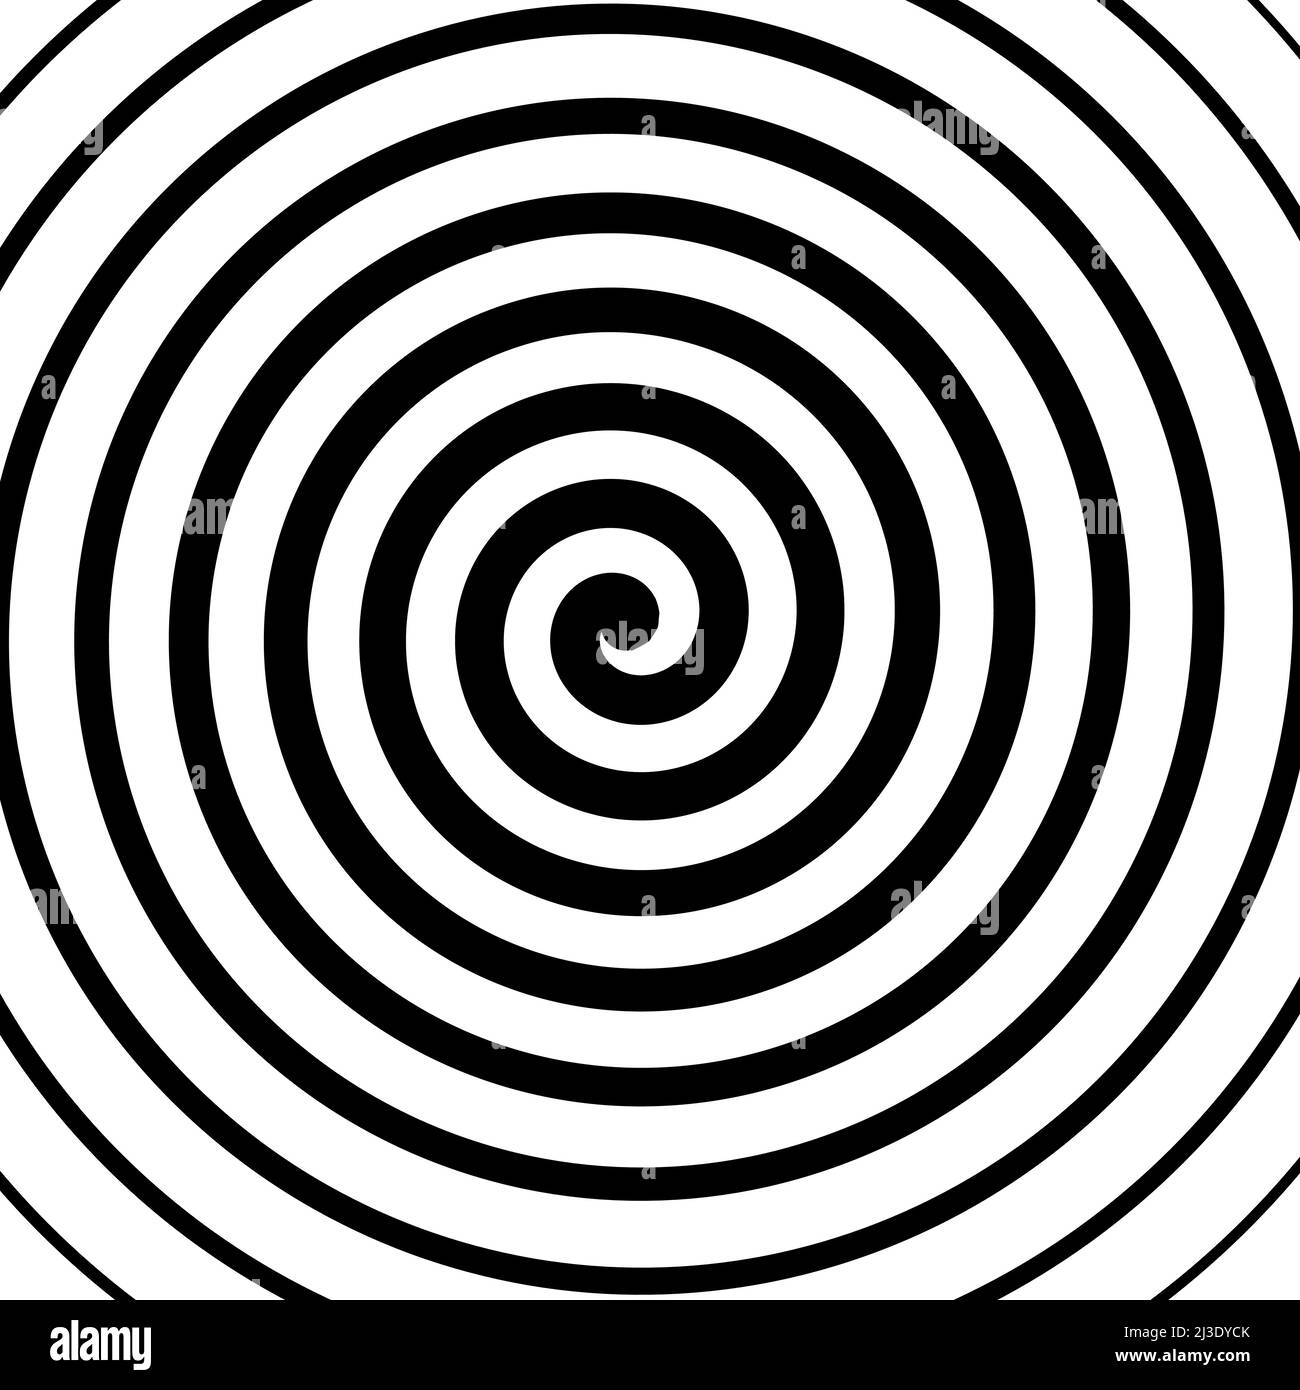 Vektor Spirale Hintergrund in schwarz und weiß. Hypnose-Thema. Abstraktes Designelement Stock Vektor